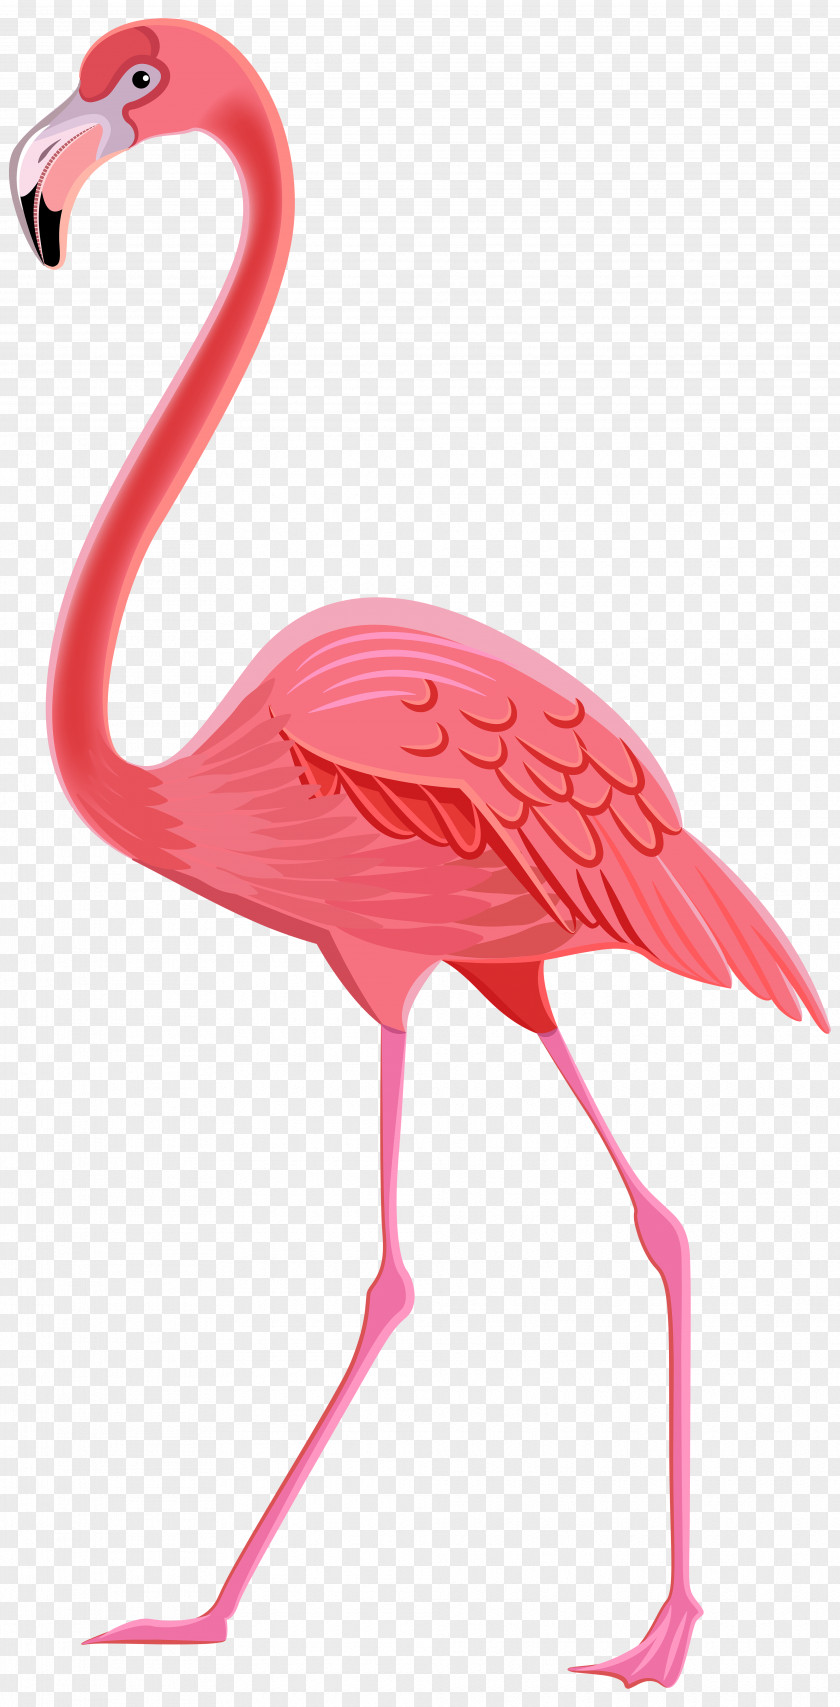 Flamingo Transparent Clip Art Image Flamingos Bird PNG